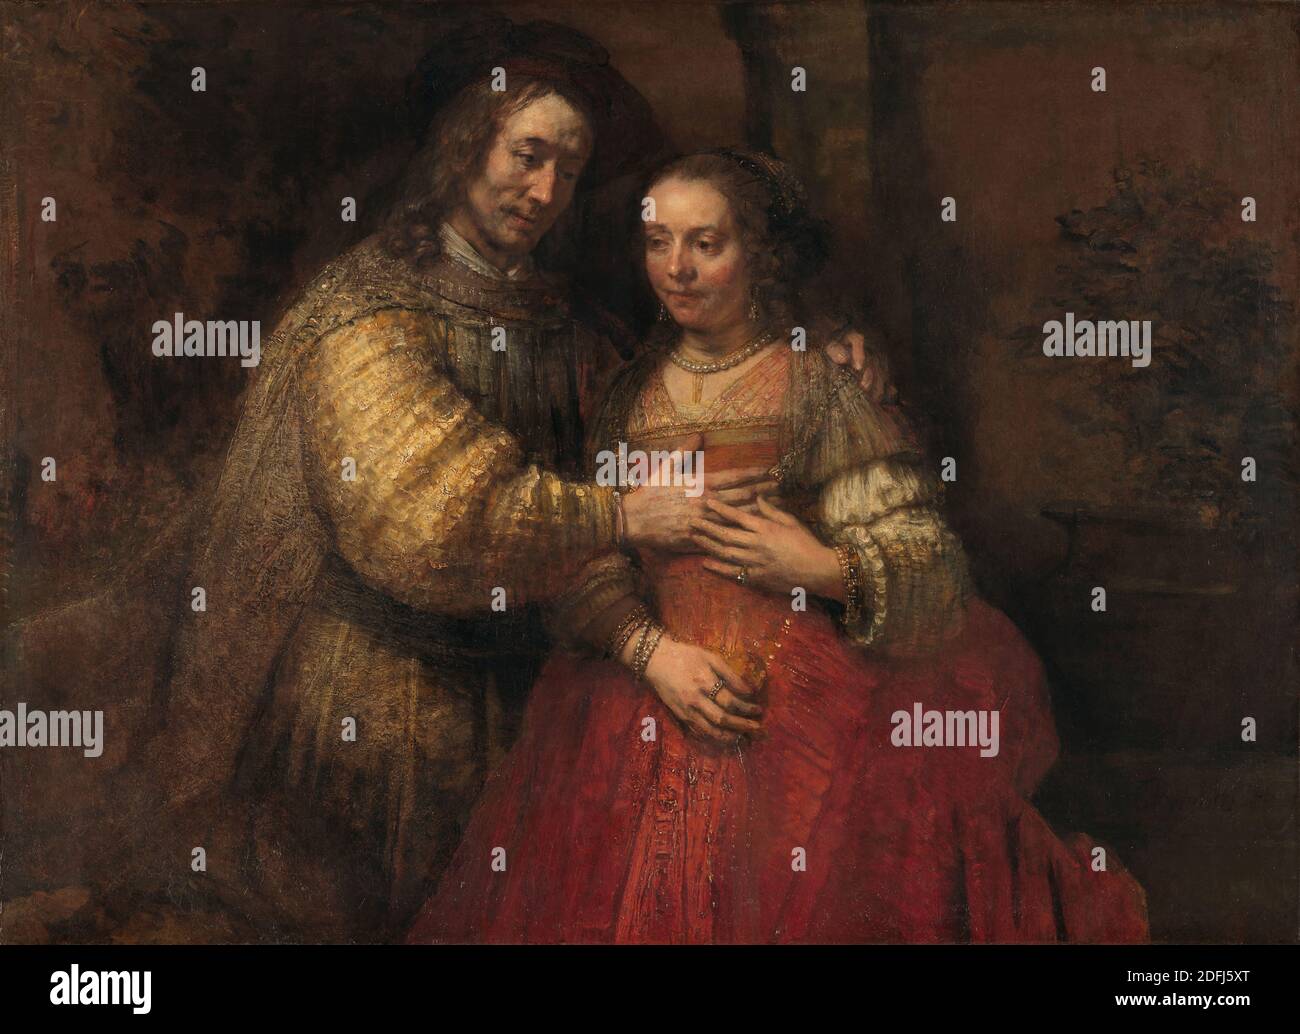 Isaac und Rebecca, bekannt als ‘die jüdische Braut’, Rembrandt van Rijn, c. 1665 - c. 1669 Stockfoto